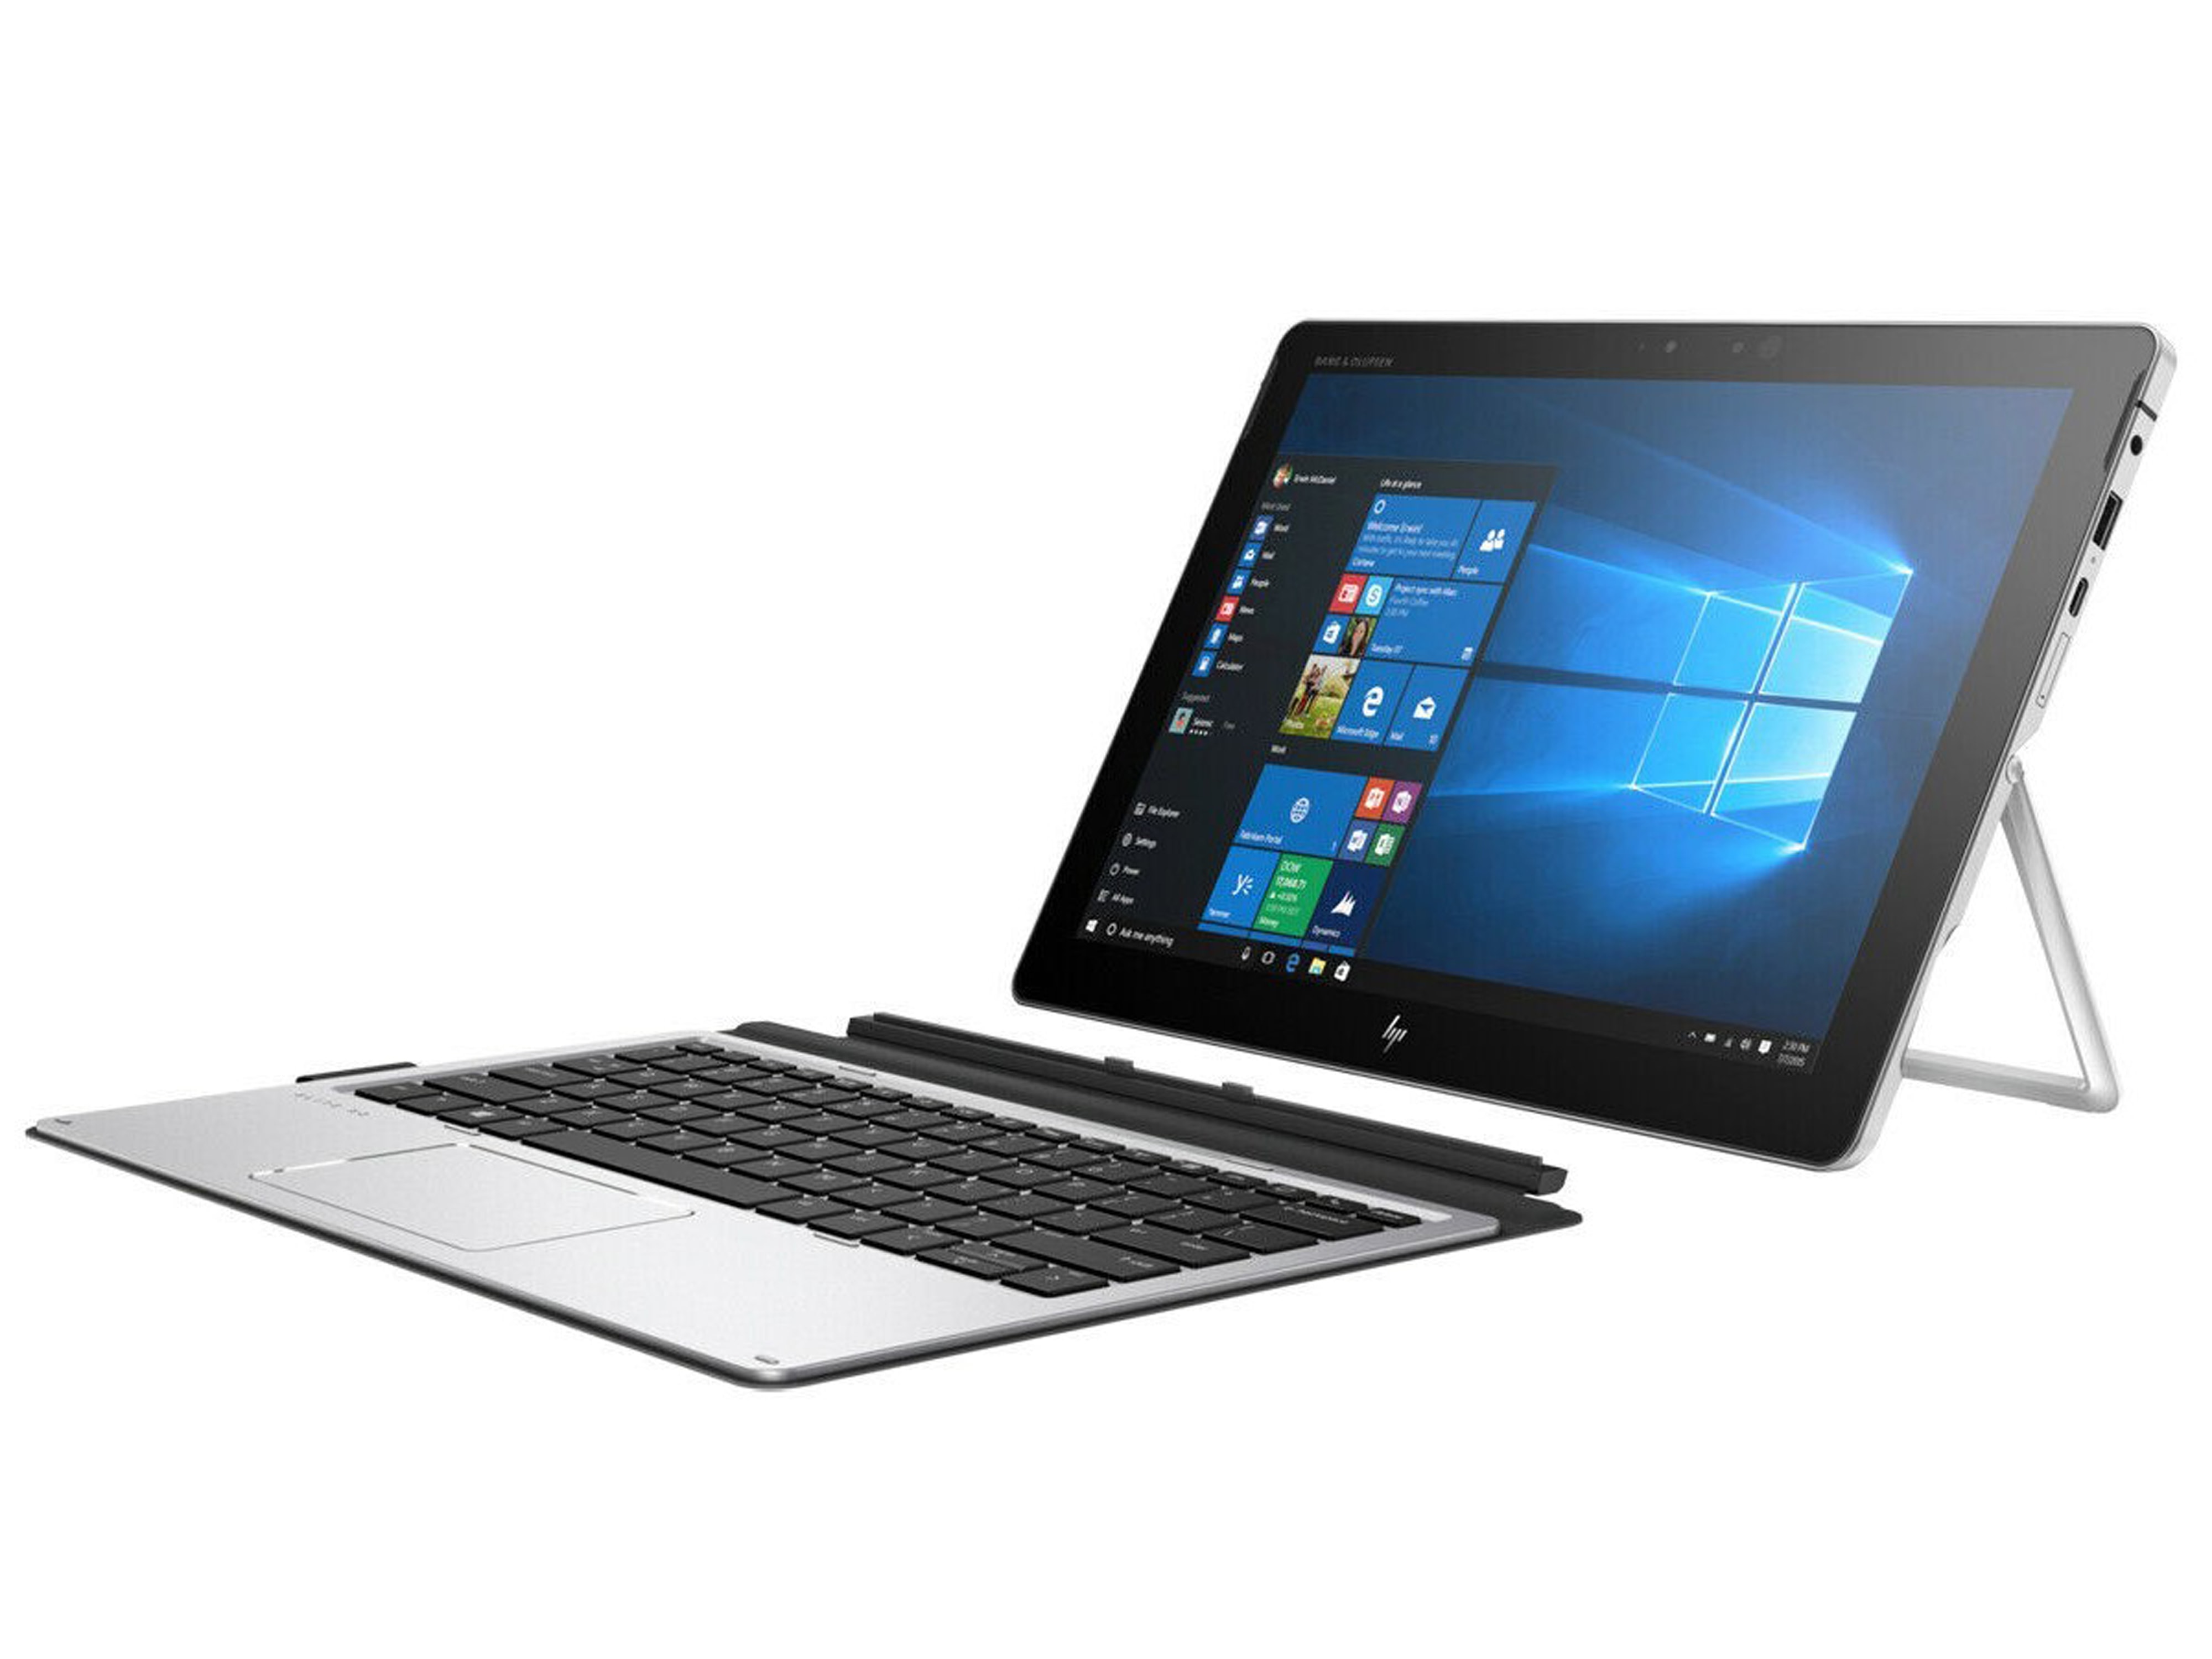 HP Tablet X2 1012 G2, i5-7200U, 8 GB, 256 GB SSD, Refurbished